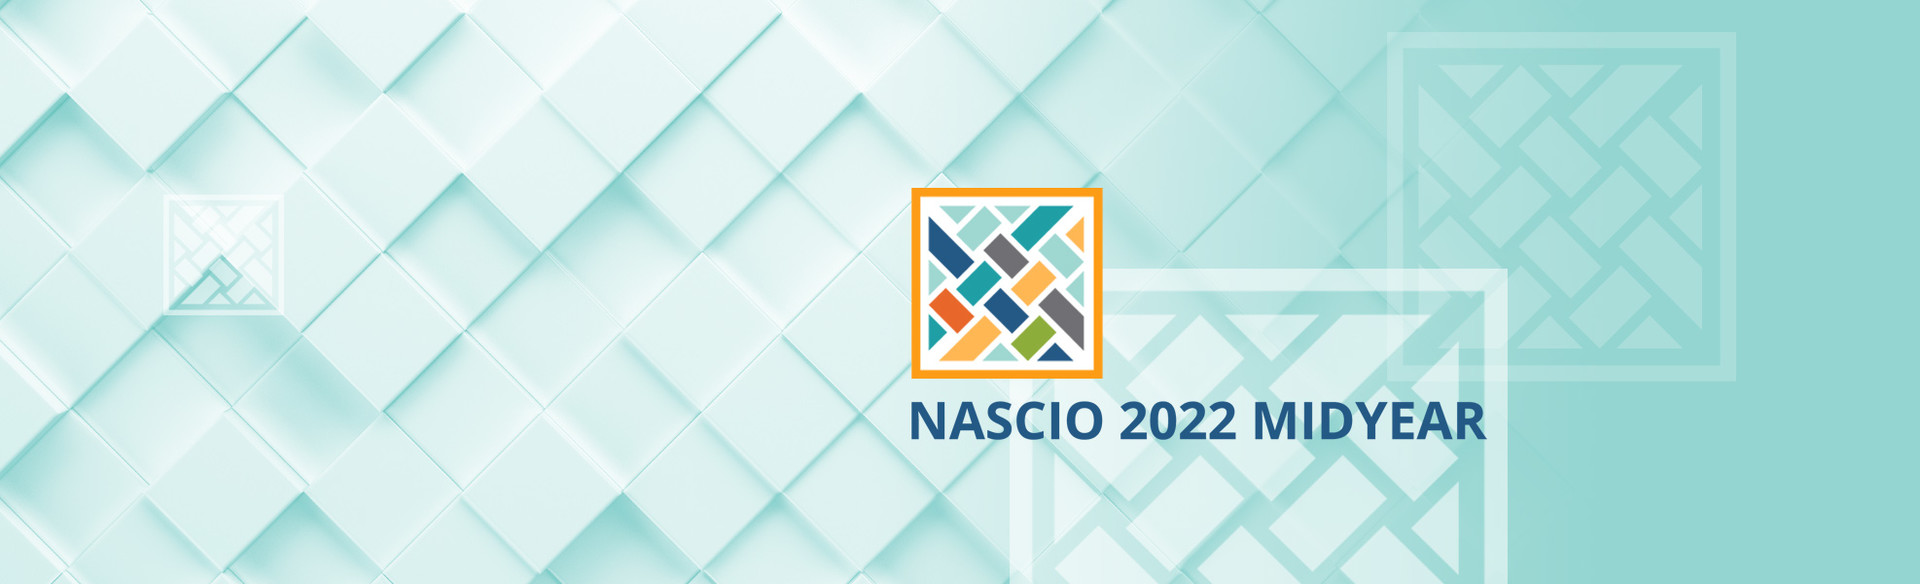 NASCIO 2022